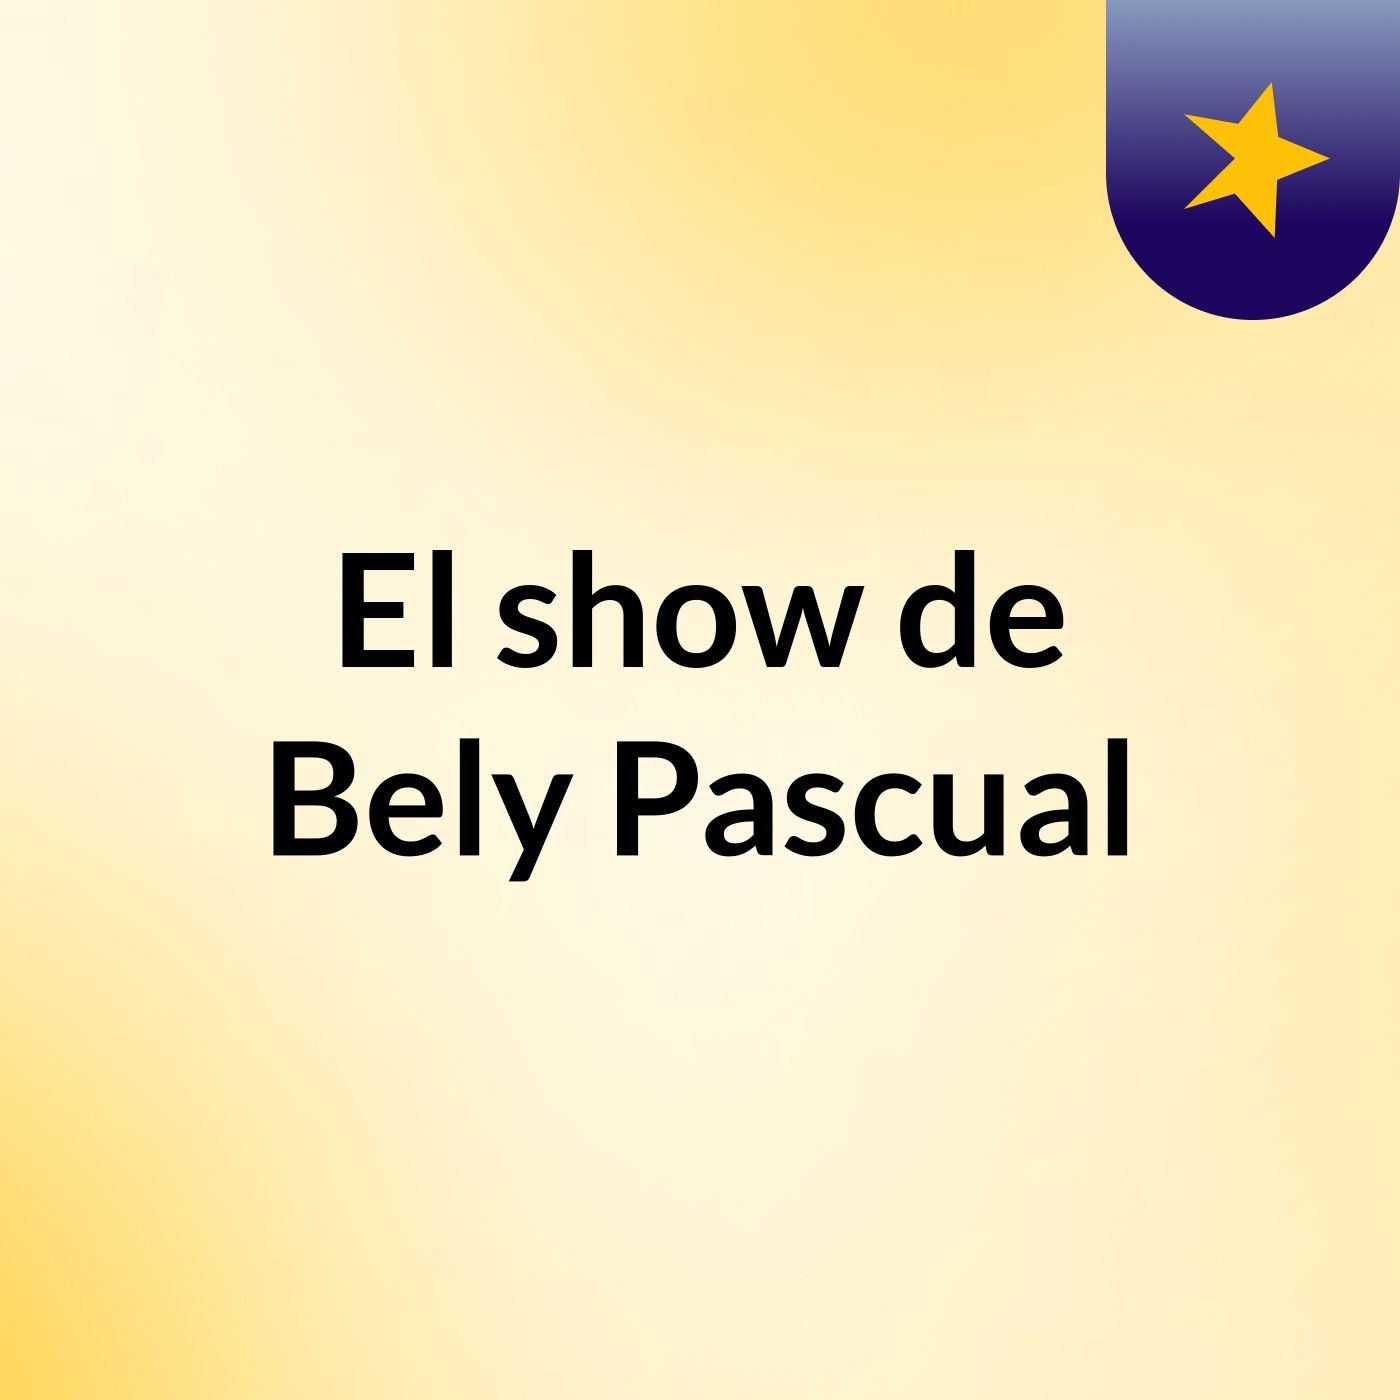 El show de Bely Pascual